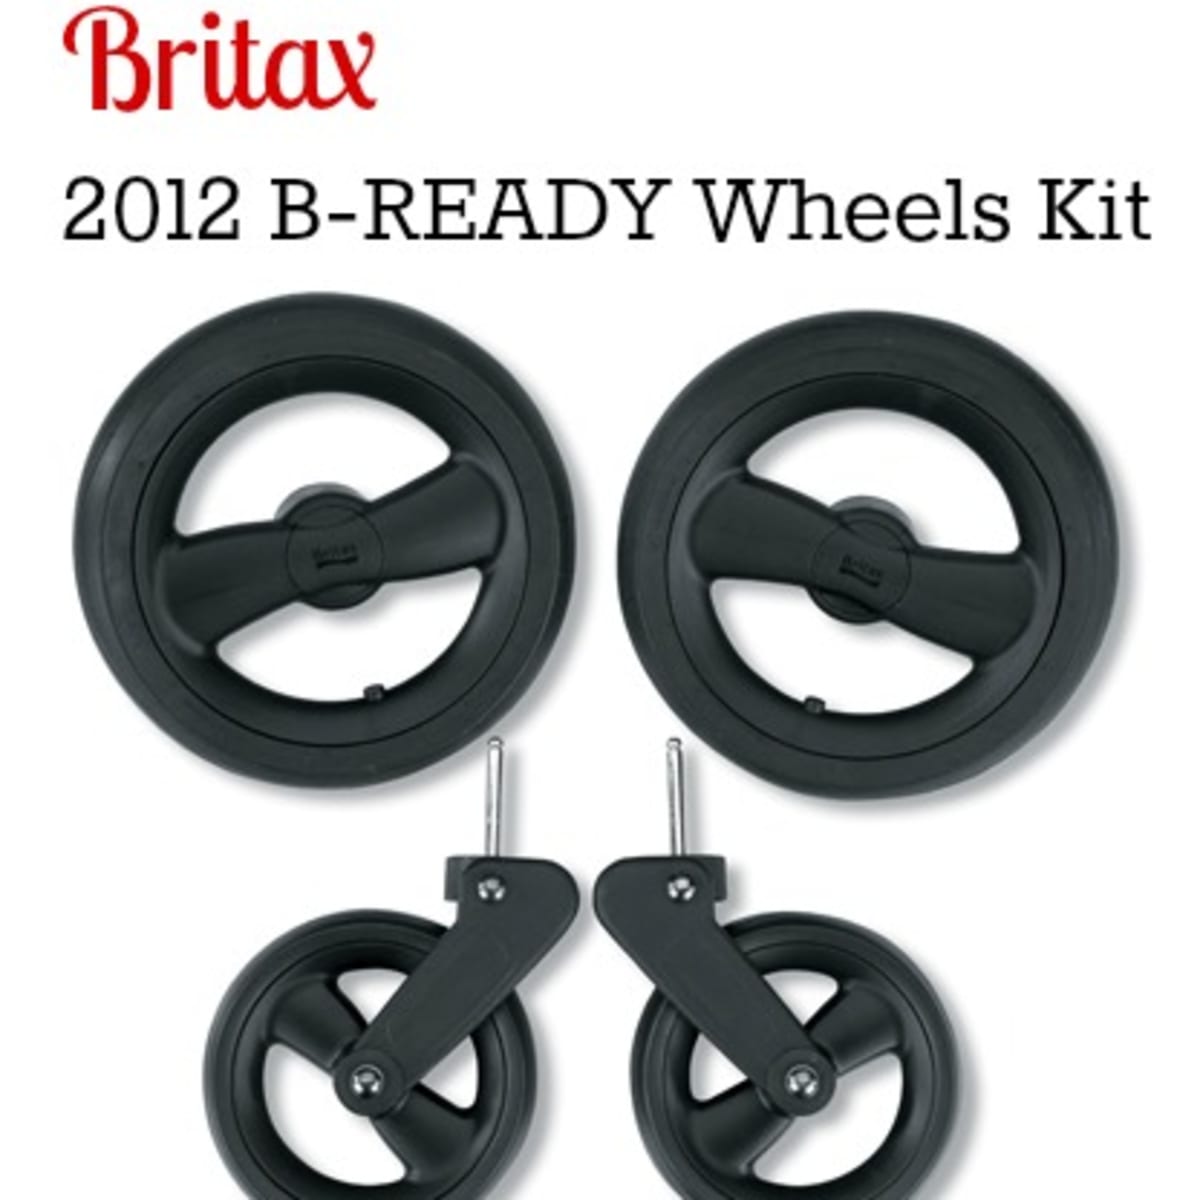 britax b ready accessories